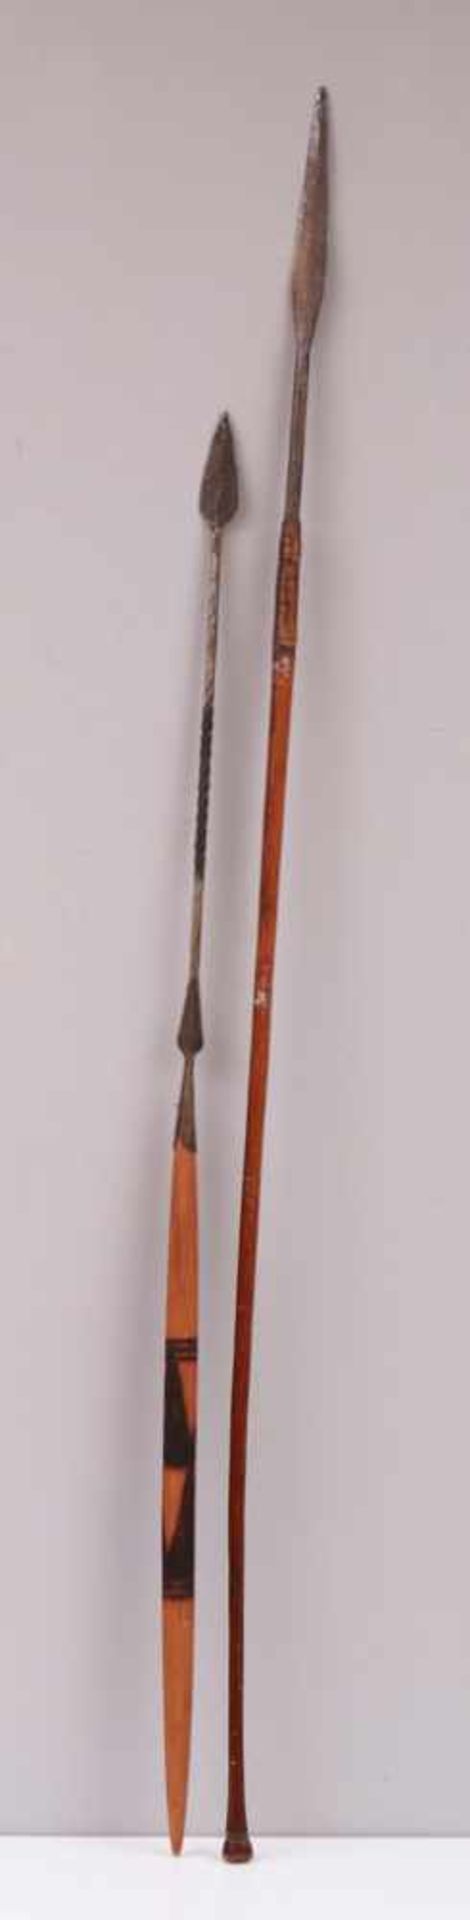 2 afrikanische Speere wohl Masai, Eisen, Holz und Bast, L ca. 130/160cm